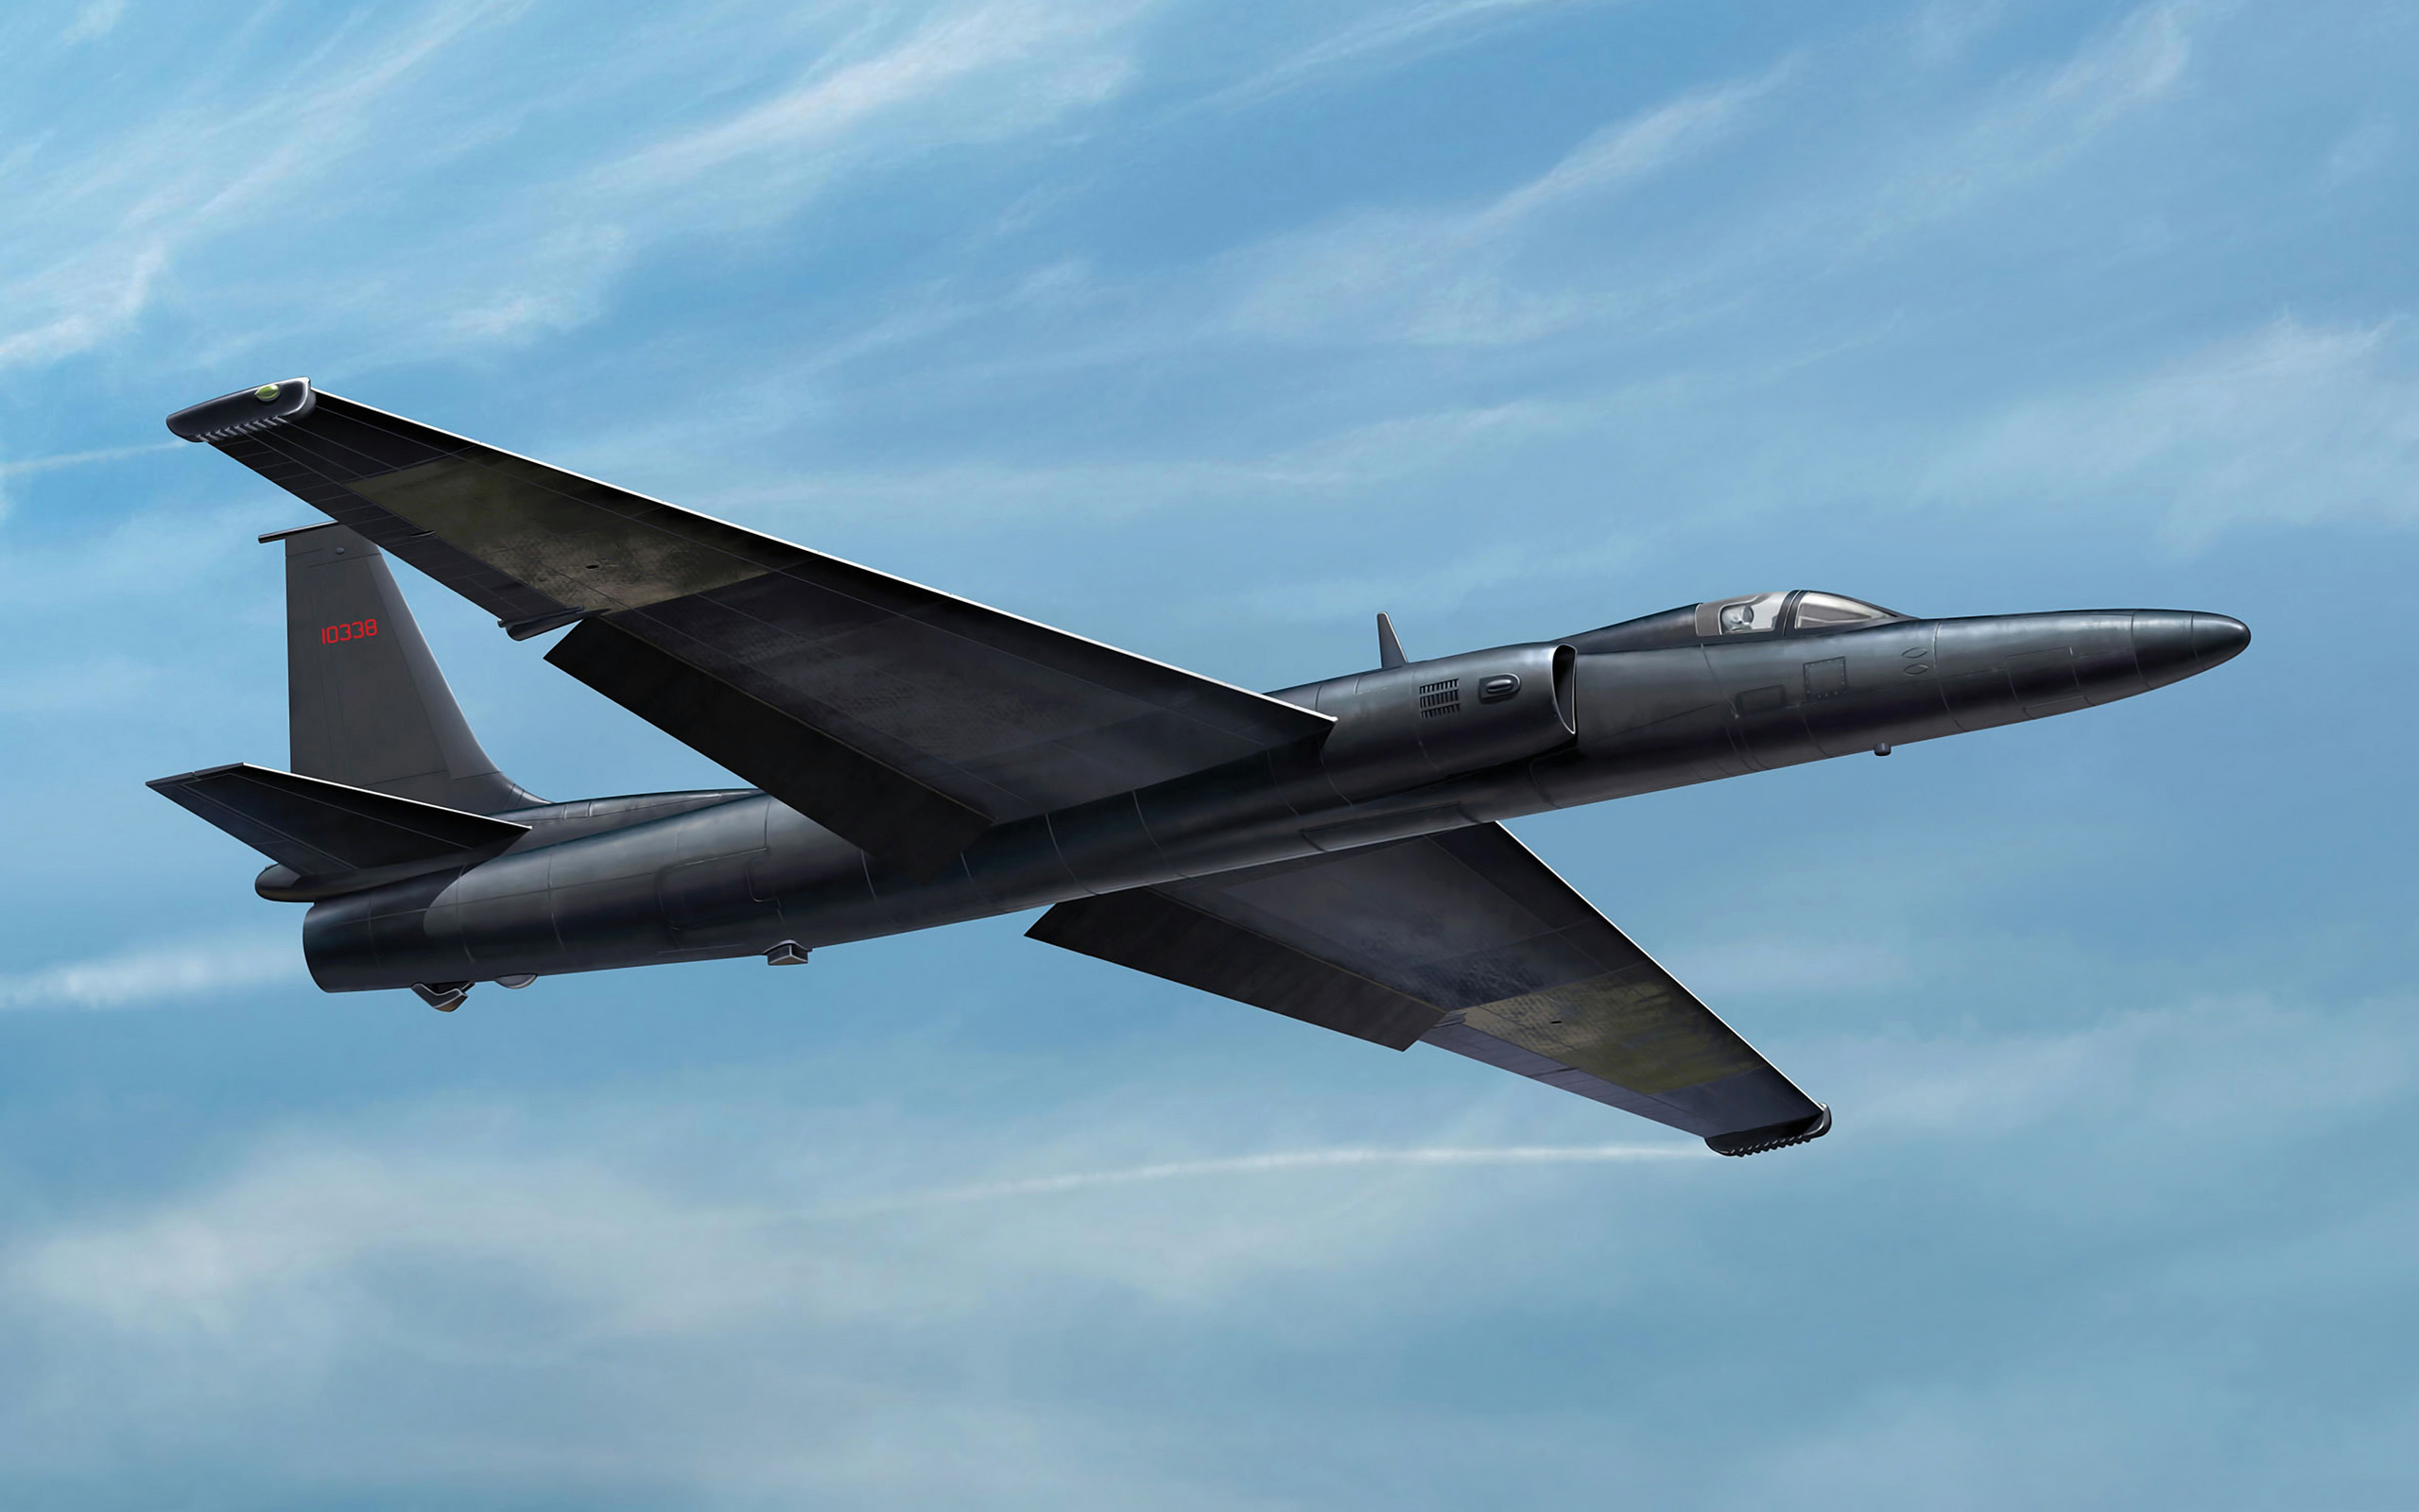 Lockheed U-2, Art plane, Jet aircraft, Military wallpaper, 2560x1600 HD Desktop